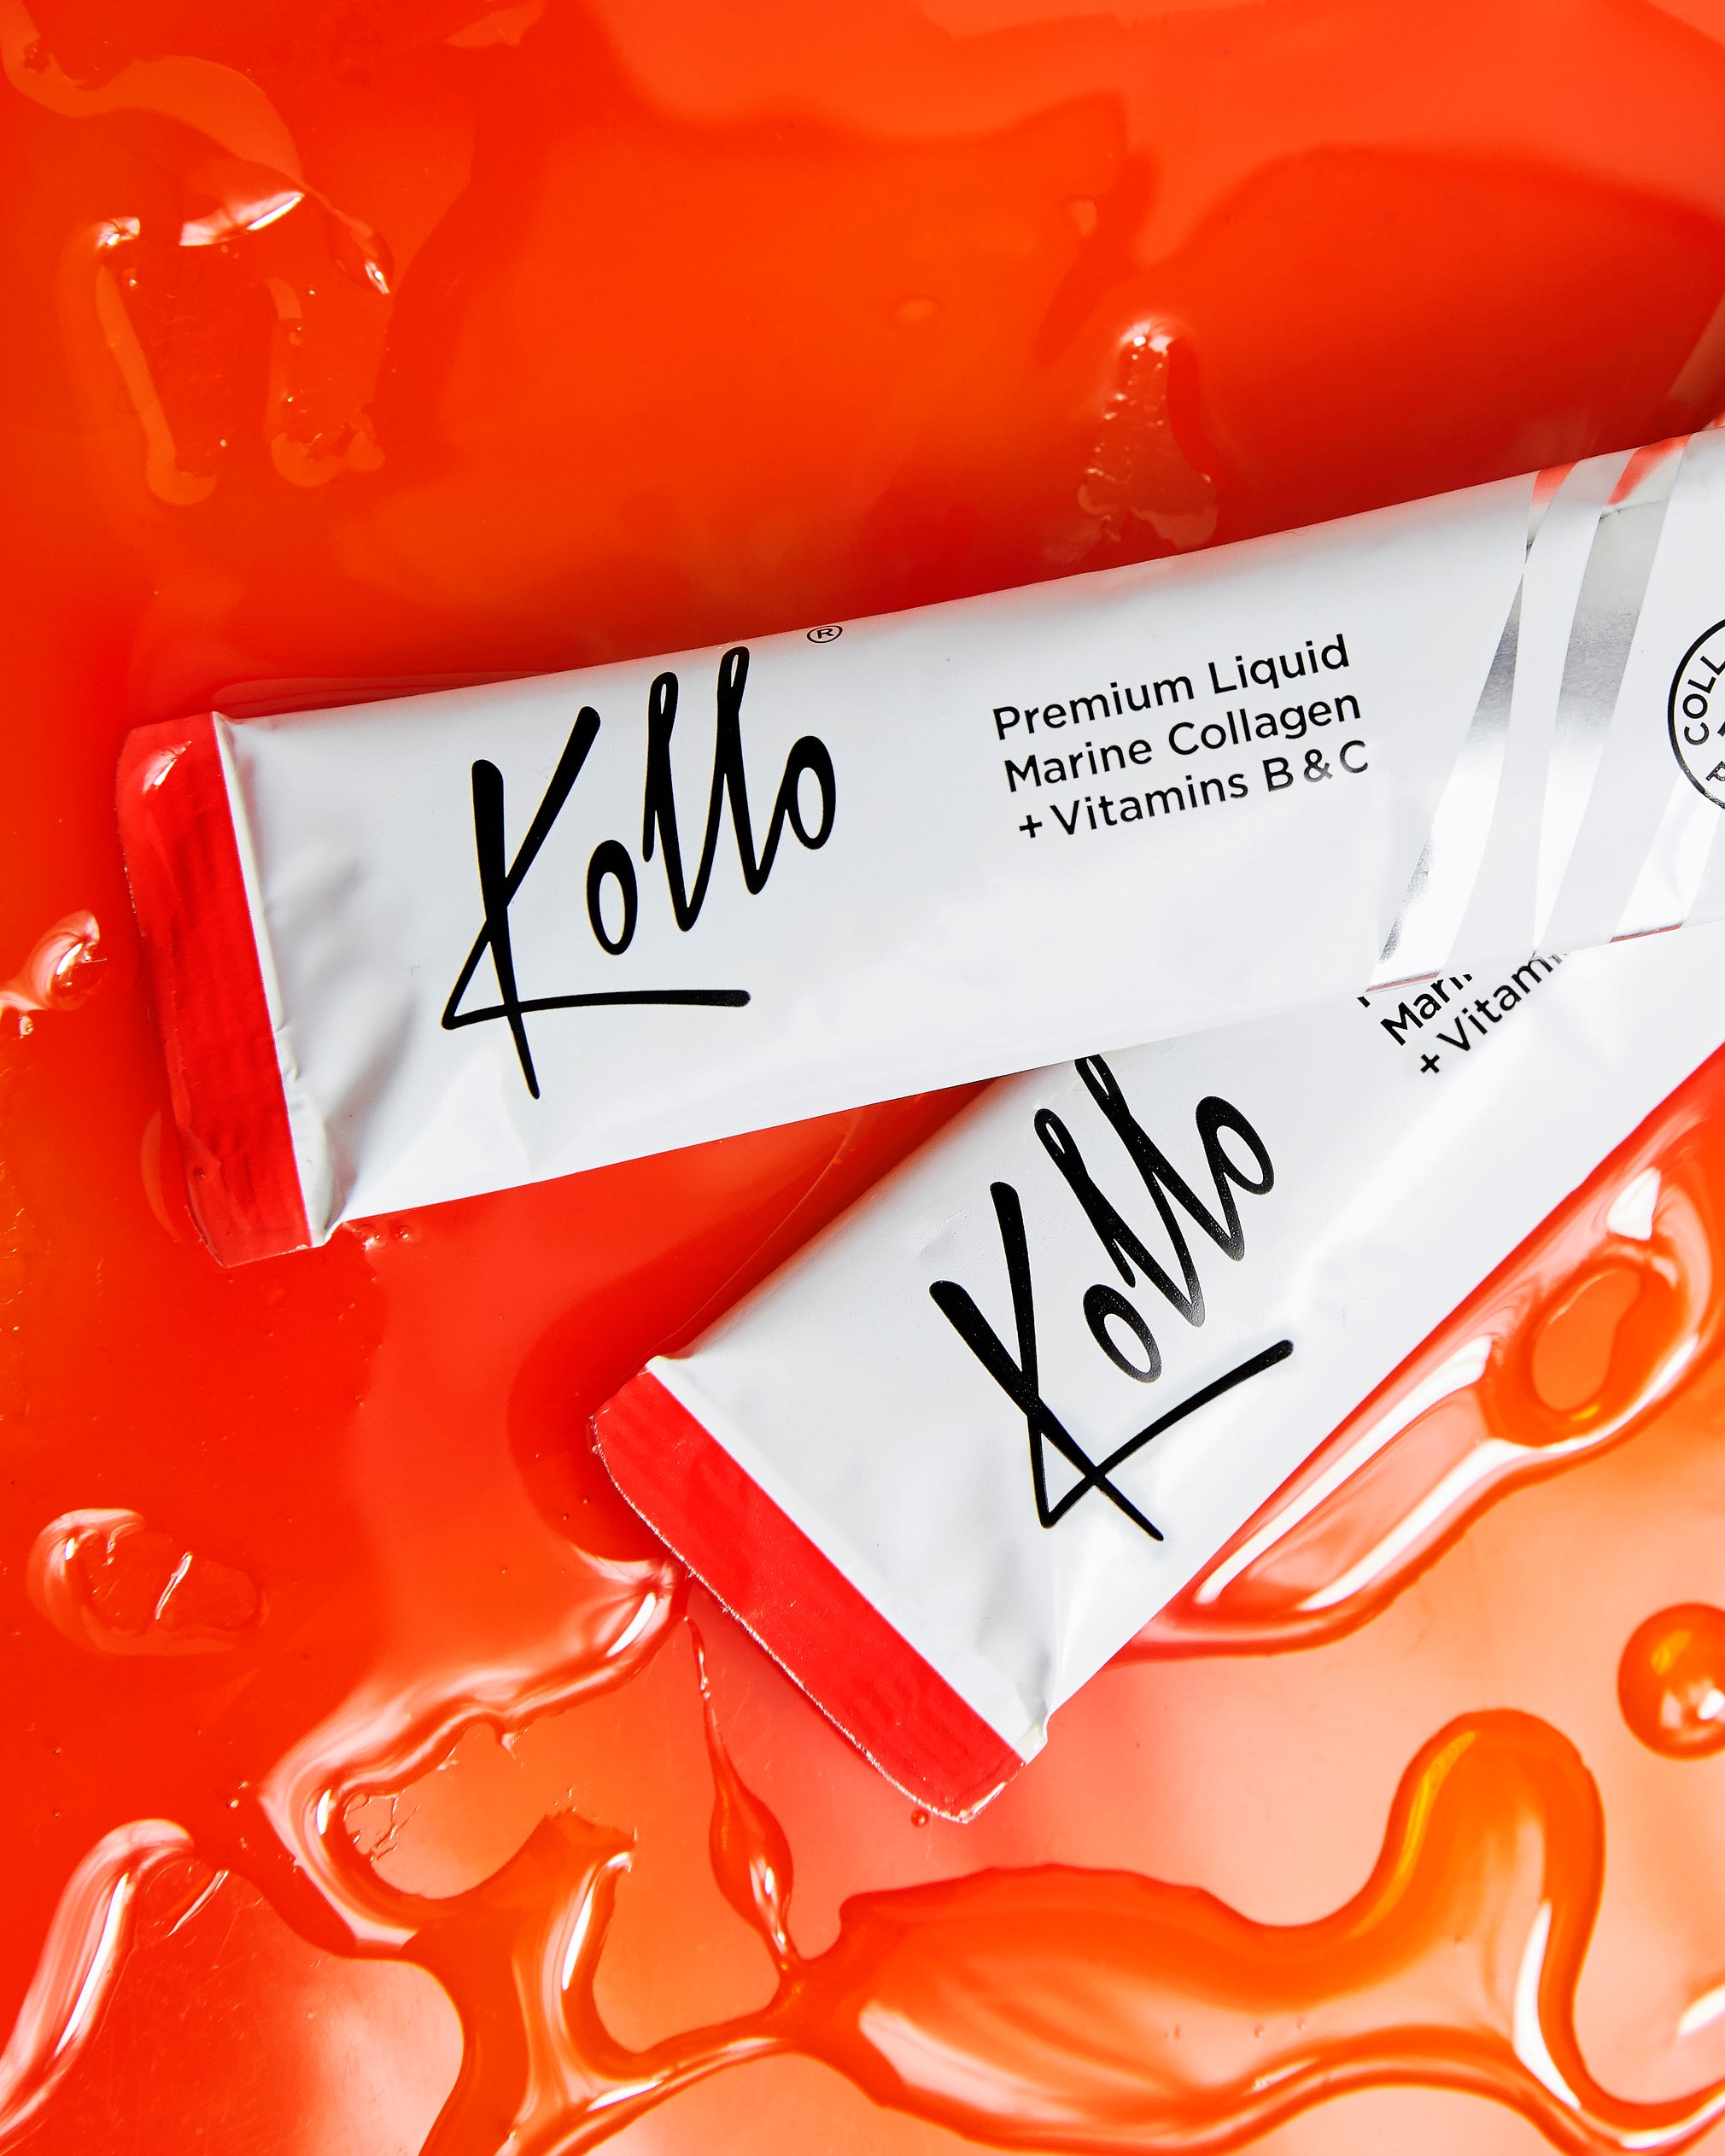 Marine Collagen: Kollo's 10000mg Collagen Supplement